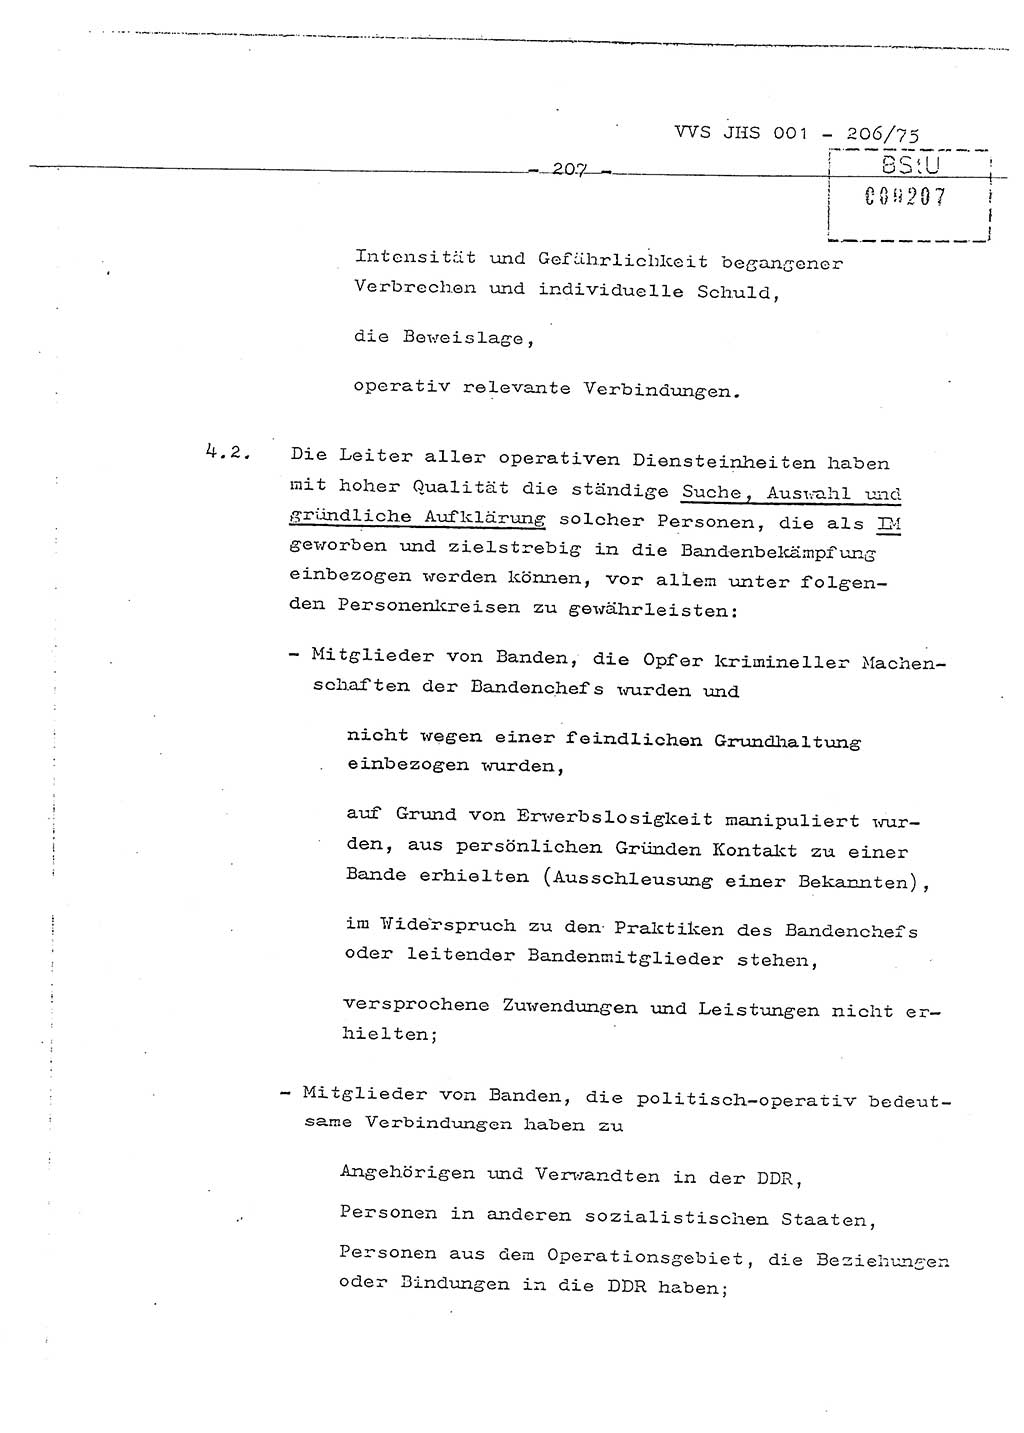 Dissertation Generalmajor Manfred Hummitzsch (Leiter der BV Leipzig), Generalmajor Heinz Fiedler (HA Ⅵ), Oberst Rolf Fister (HA Ⅸ), Ministerium für Staatssicherheit (MfS) [Deutsche Demokratische Republik (DDR)], Juristische Hochschule (JHS), Vertrauliche Verschlußsache (VVS) 001-206/75, Potsdam 1975, Seite 207 (Diss. MfS DDR JHS VVS 001-206/75 1975, S. 207)